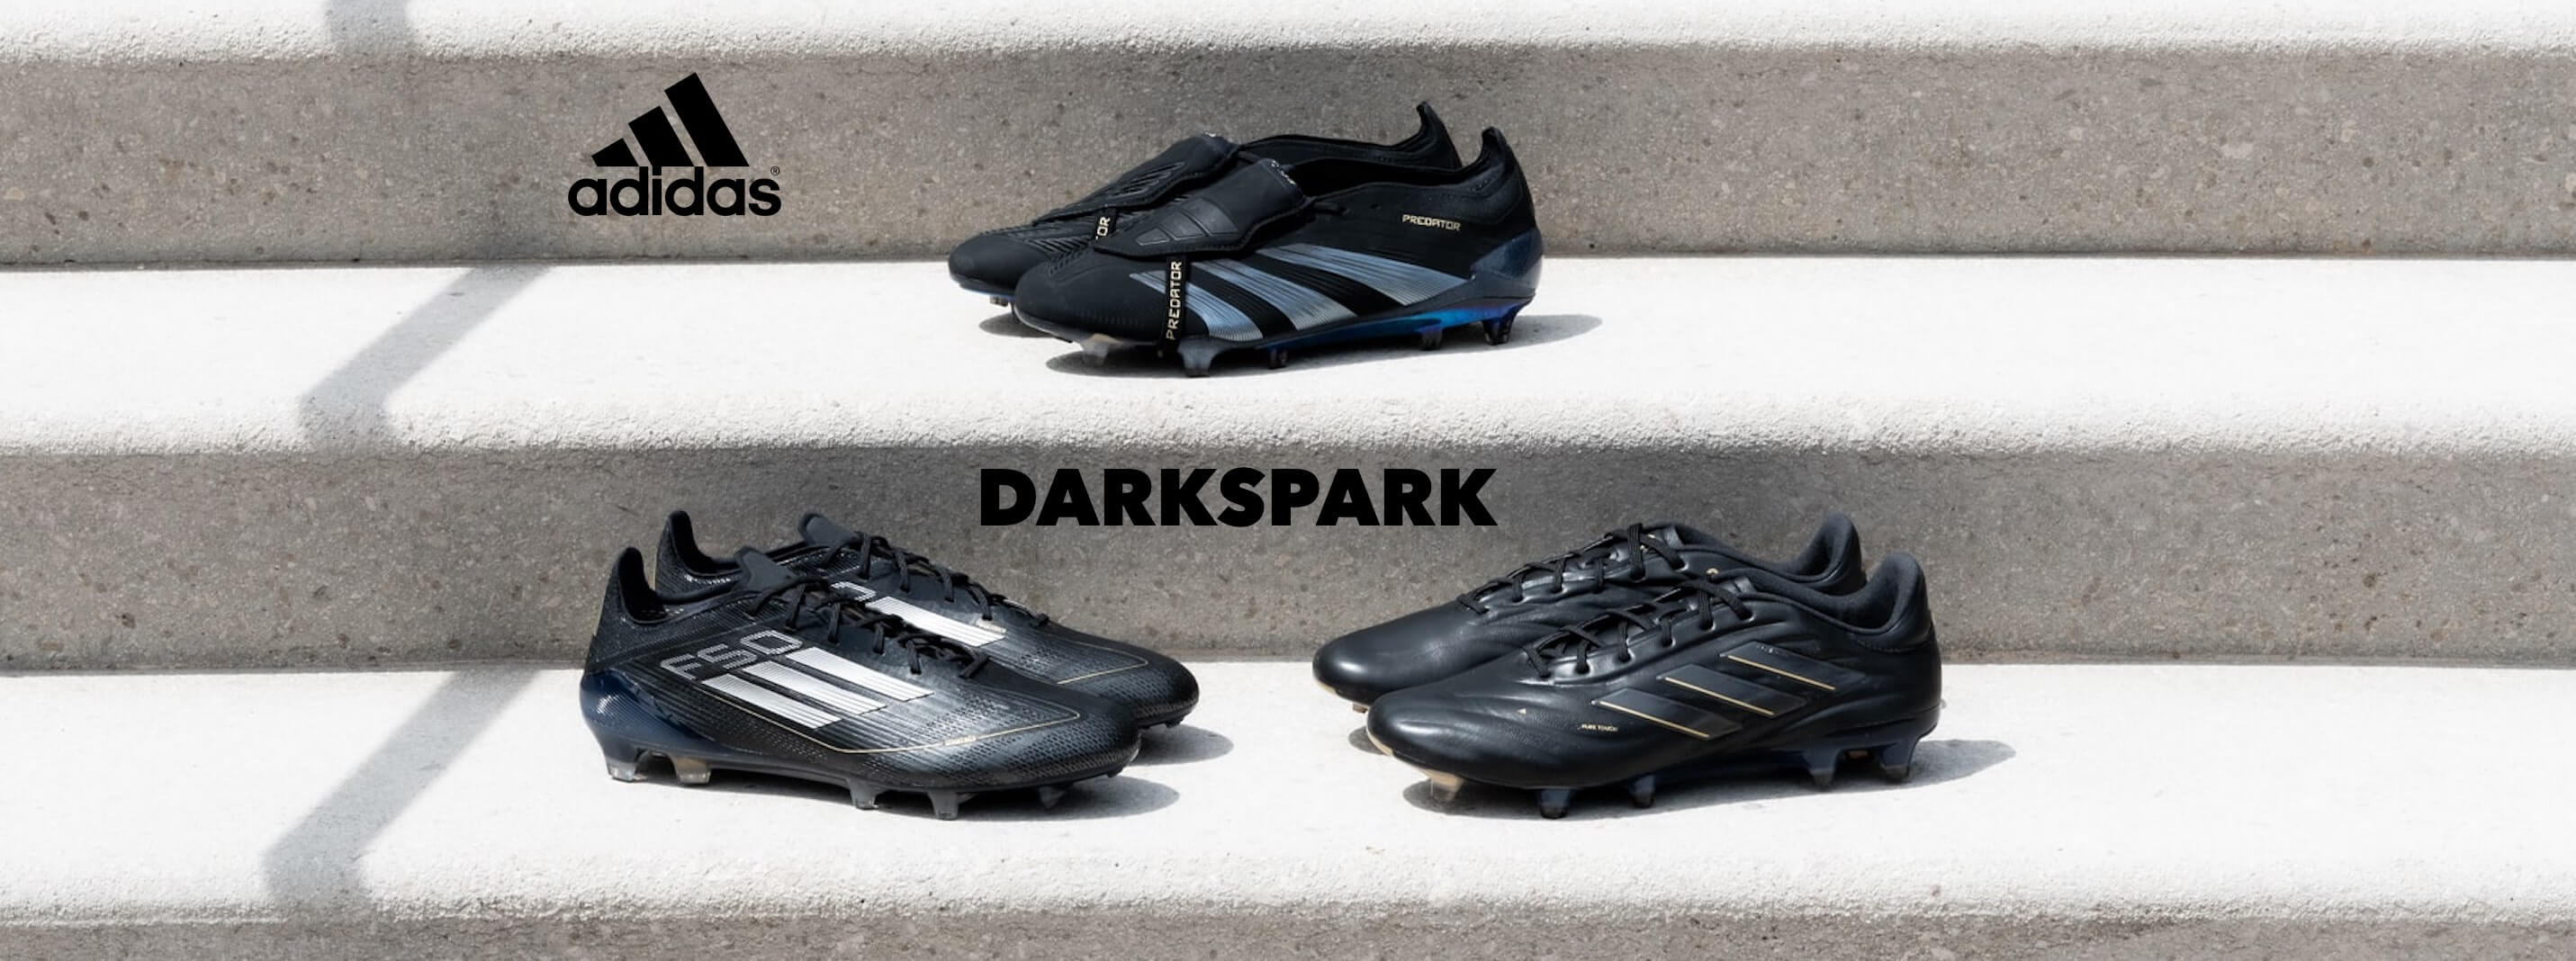 adidas Darkspark Pack - Dekstop